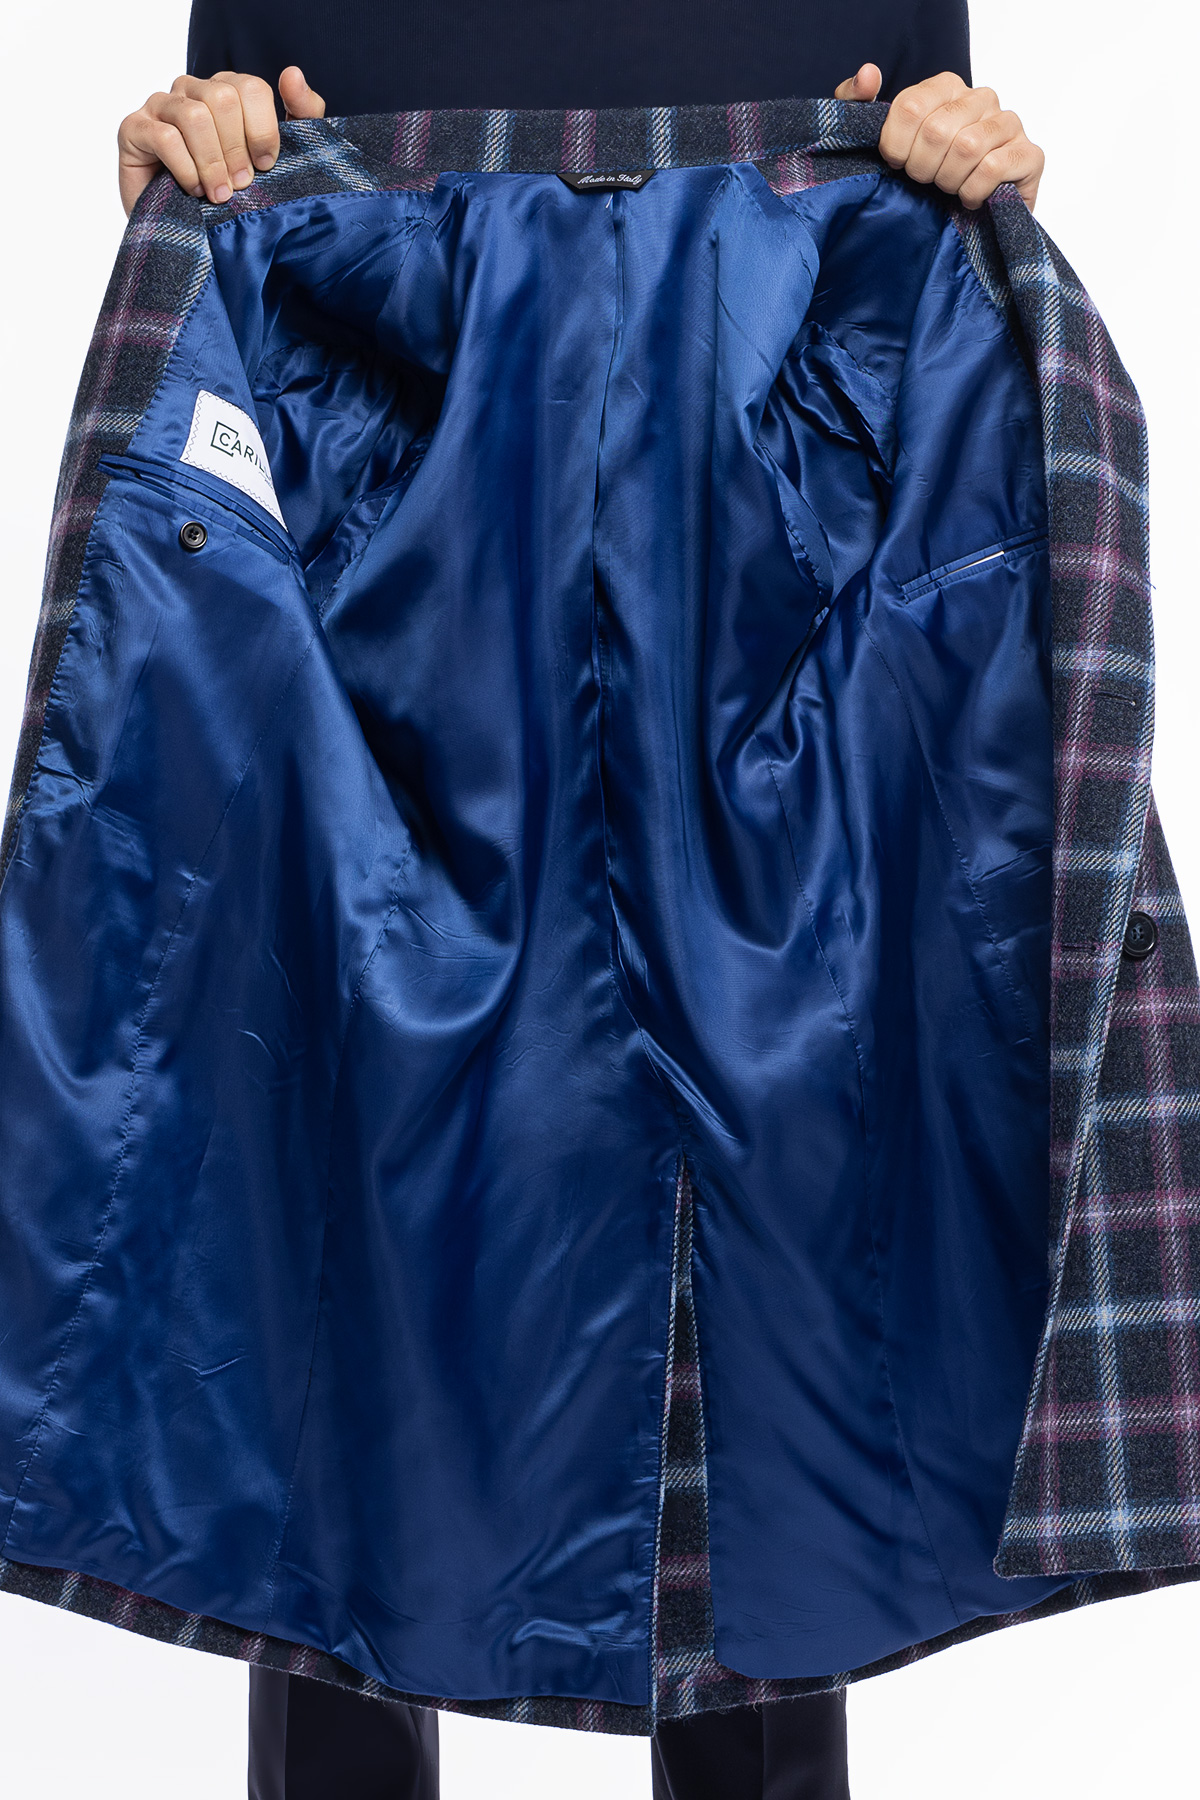 Cappotto uomo blu fantasia quadri doppiopetto in pura lana Holland & Sherry rever 13cm con martingala